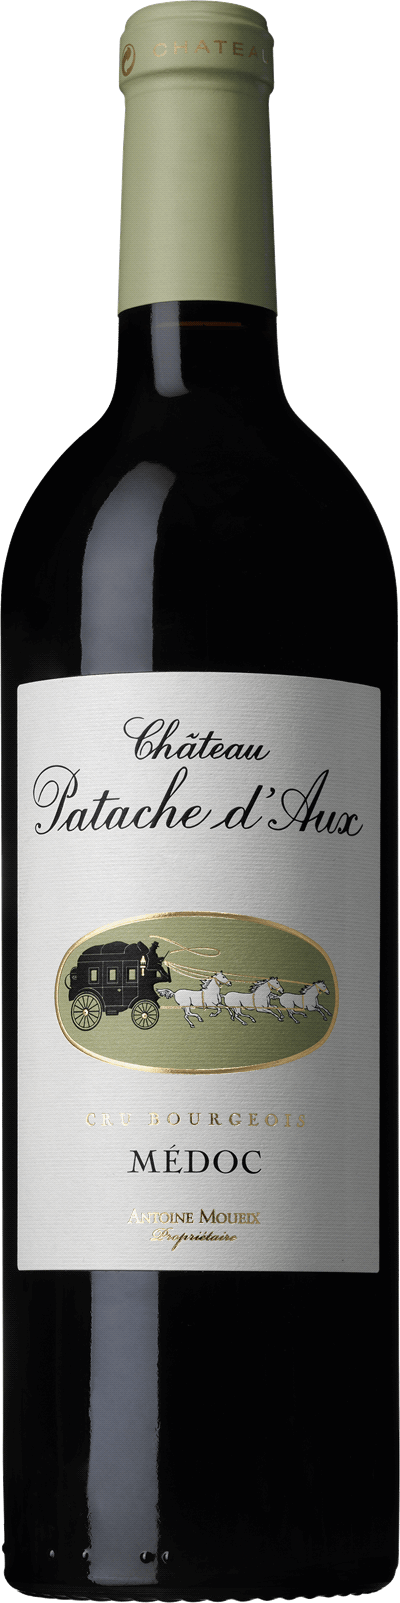 Wine Table Chateau Patache D'Aux